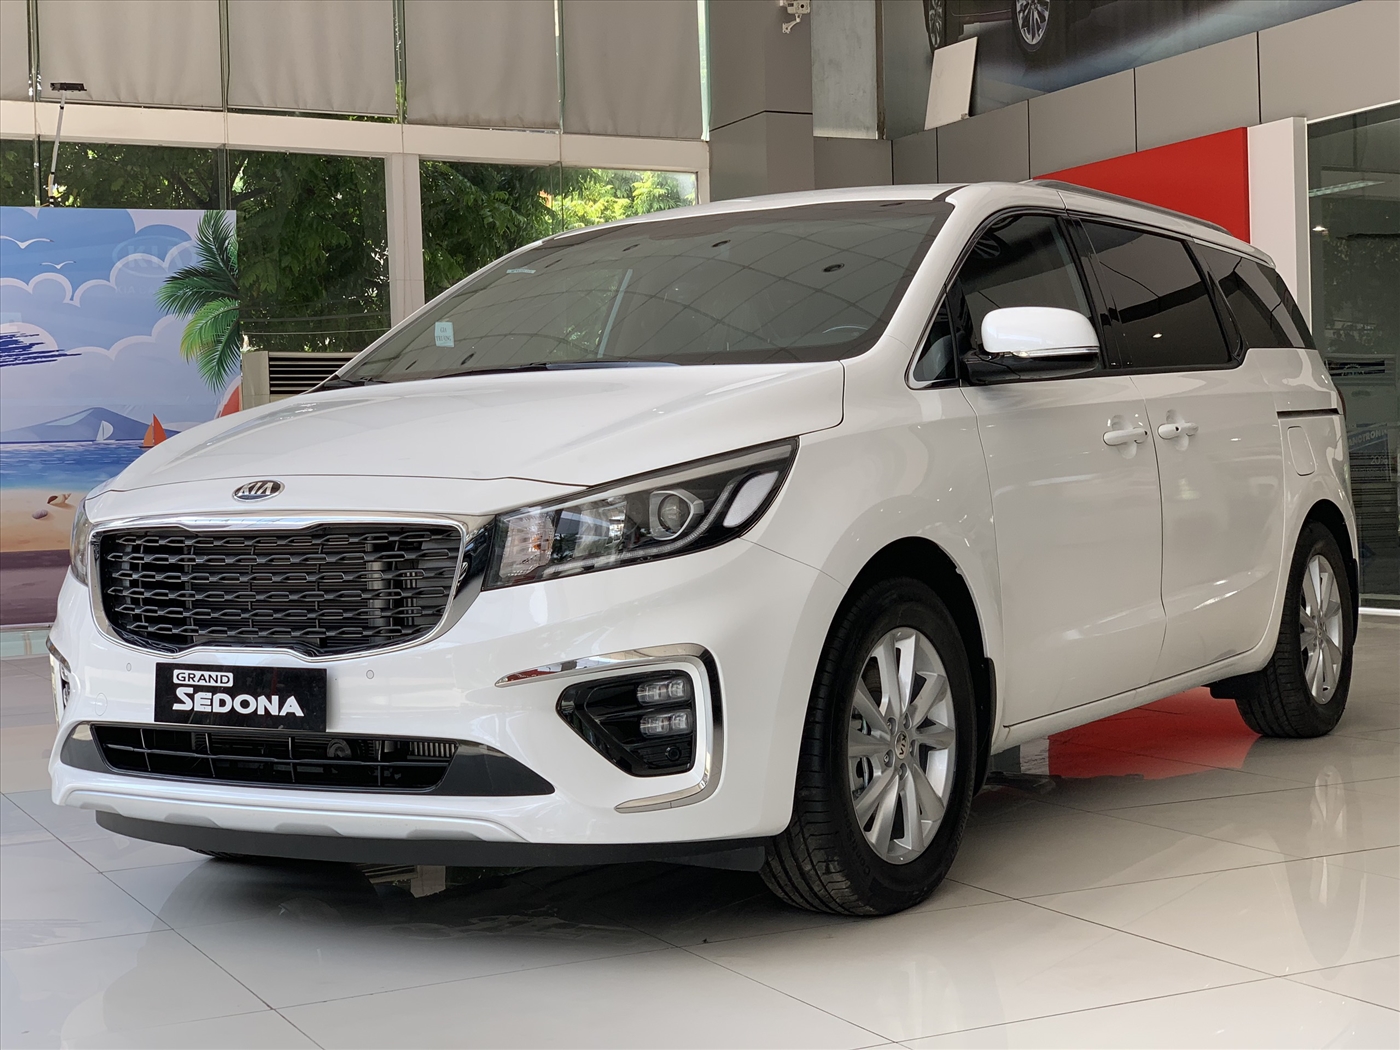 Đánh giá ưu nhược điểm xe KIA Sedona 20192020 tại Việt Nam